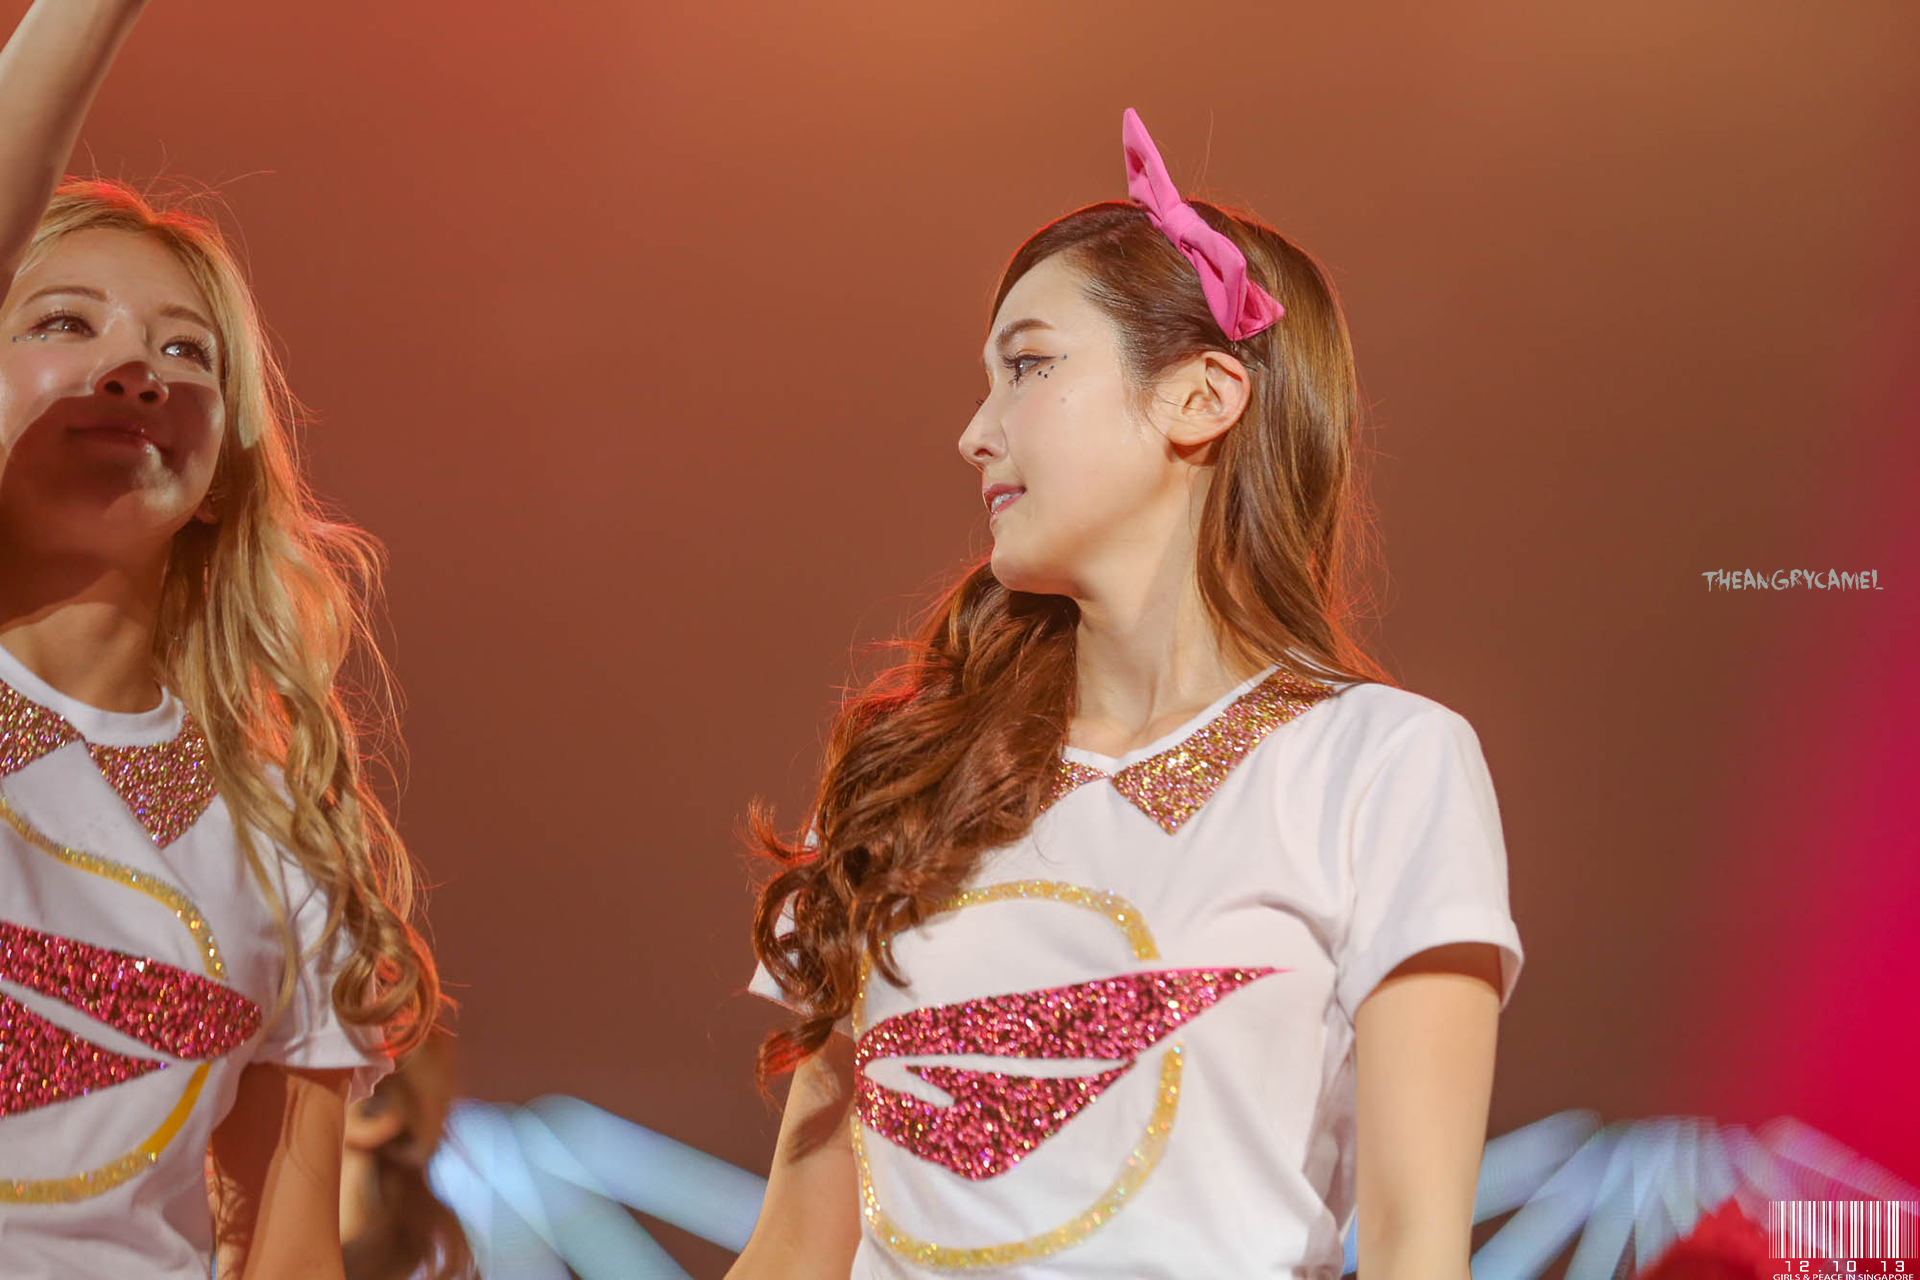 [PIC][11-10-2013]SNSD xuất phát đi Singapore để biểu diễn "2013 Girls' Generation's World Tour – Girls & Peace" vào sáng nay - Page 4 10230371134_d3038b0420_o